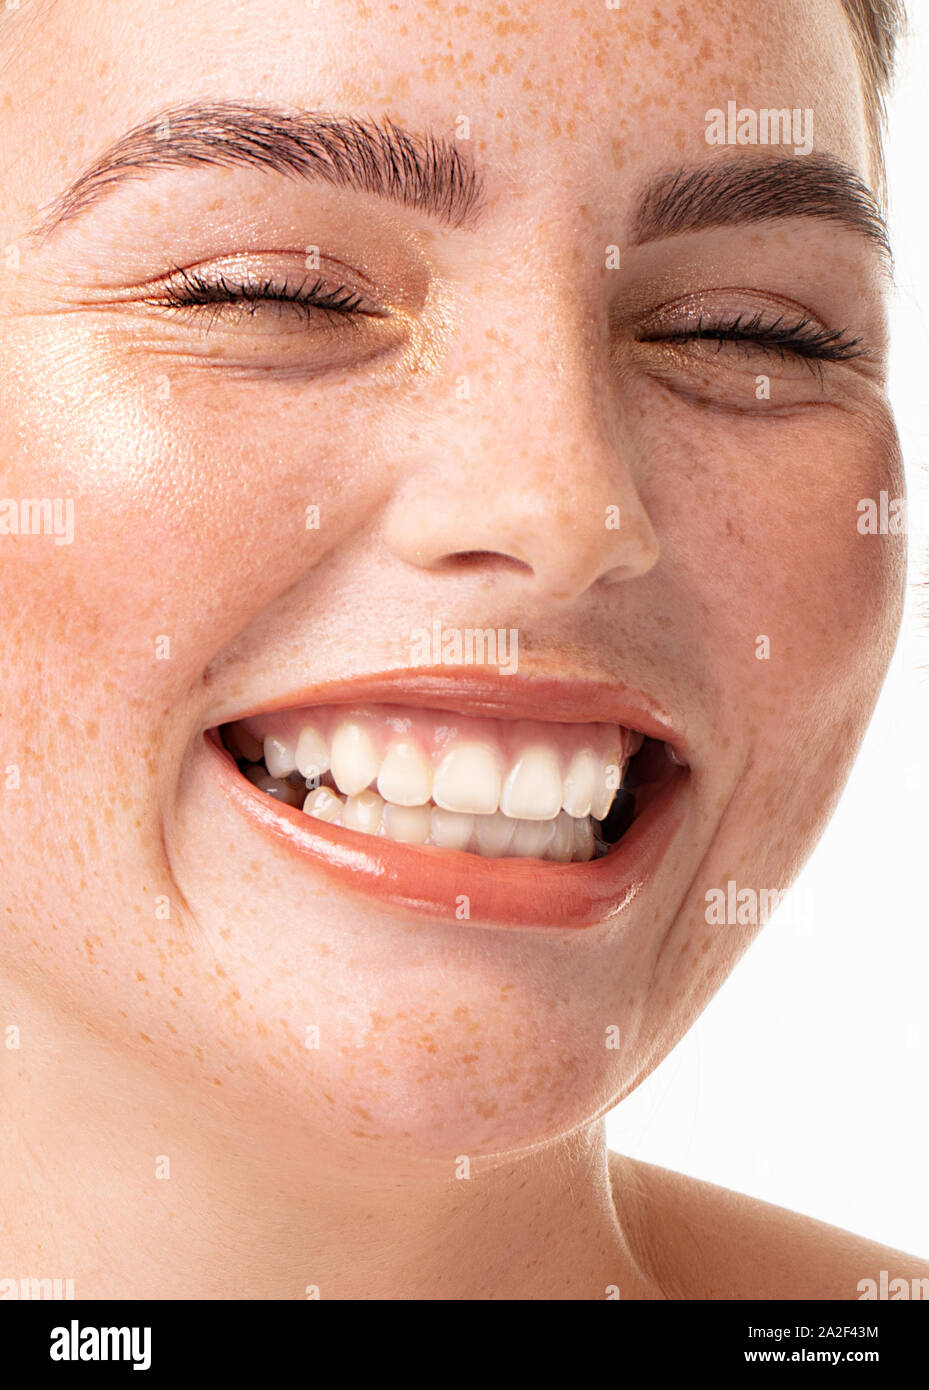 Porträt der schönen jungen Frau mit perfekt sauber gesunde Haut und langen Wimpern. Nahaufnahme Gesicht des Mädchens mit Sommersprossen. Rothaarige Dame mit toothy Lächeln. Stockfoto